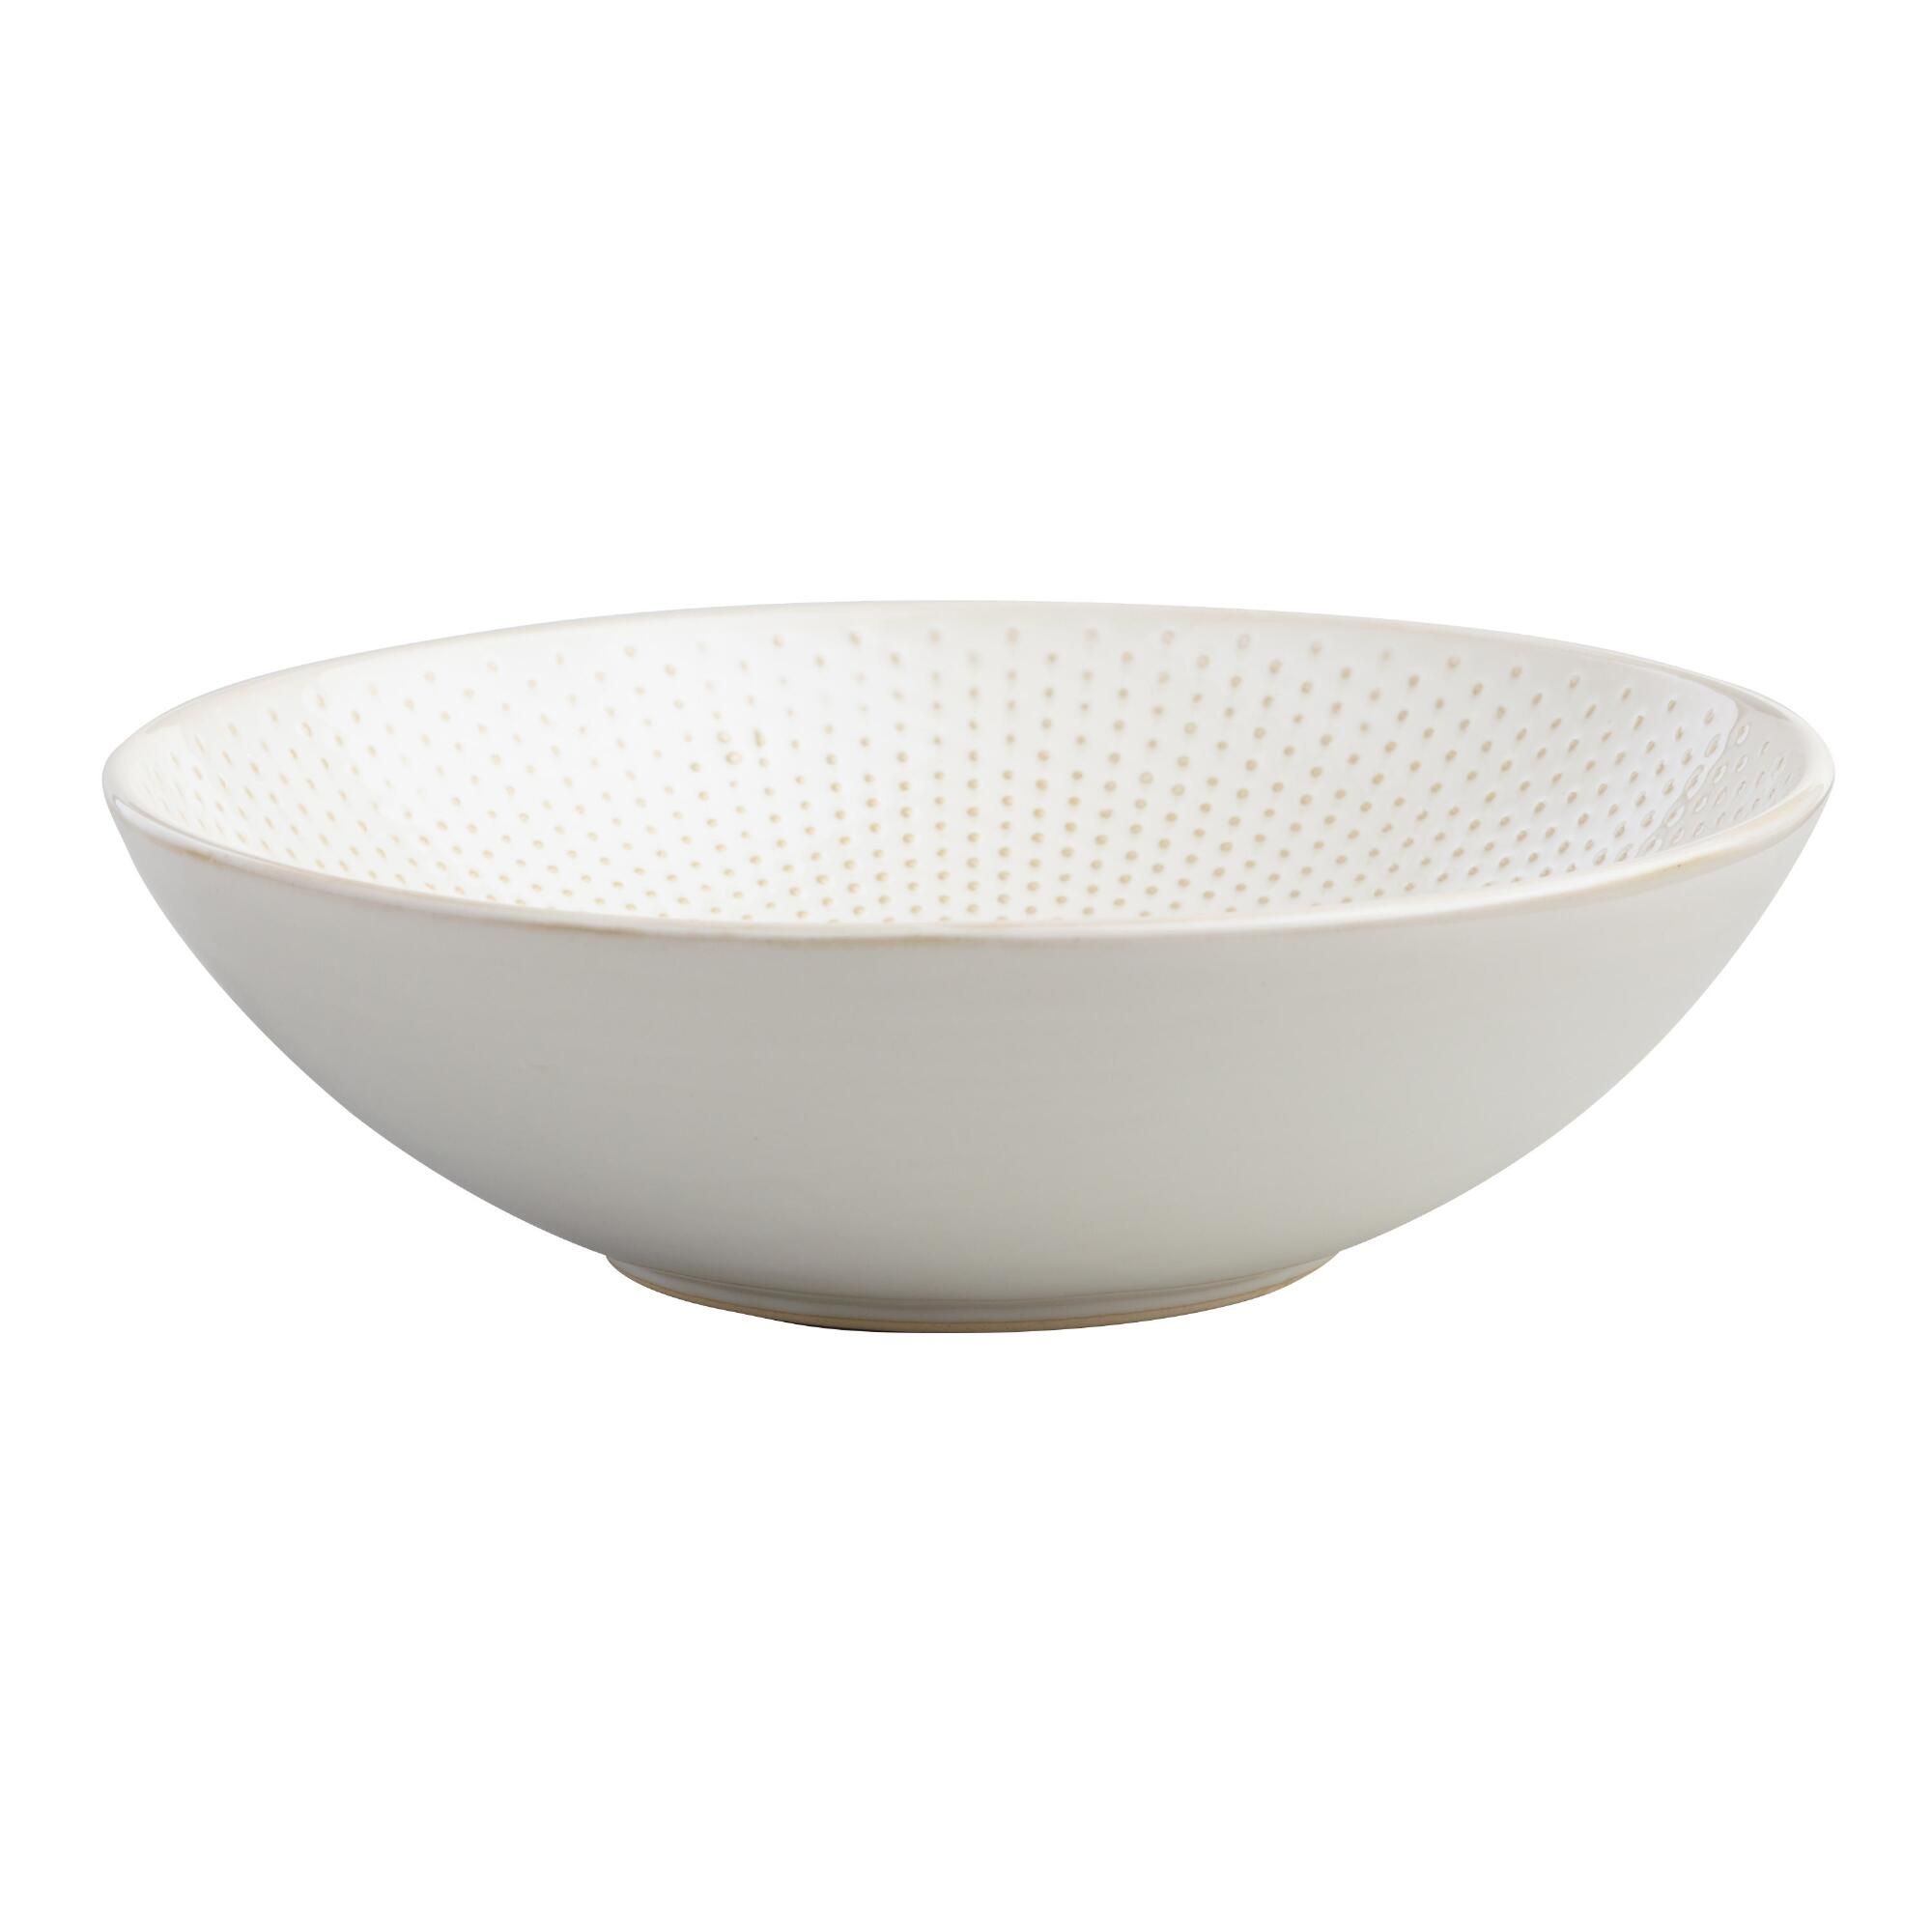 Large  White Textured Stoneware Bowl by World Market | World Market